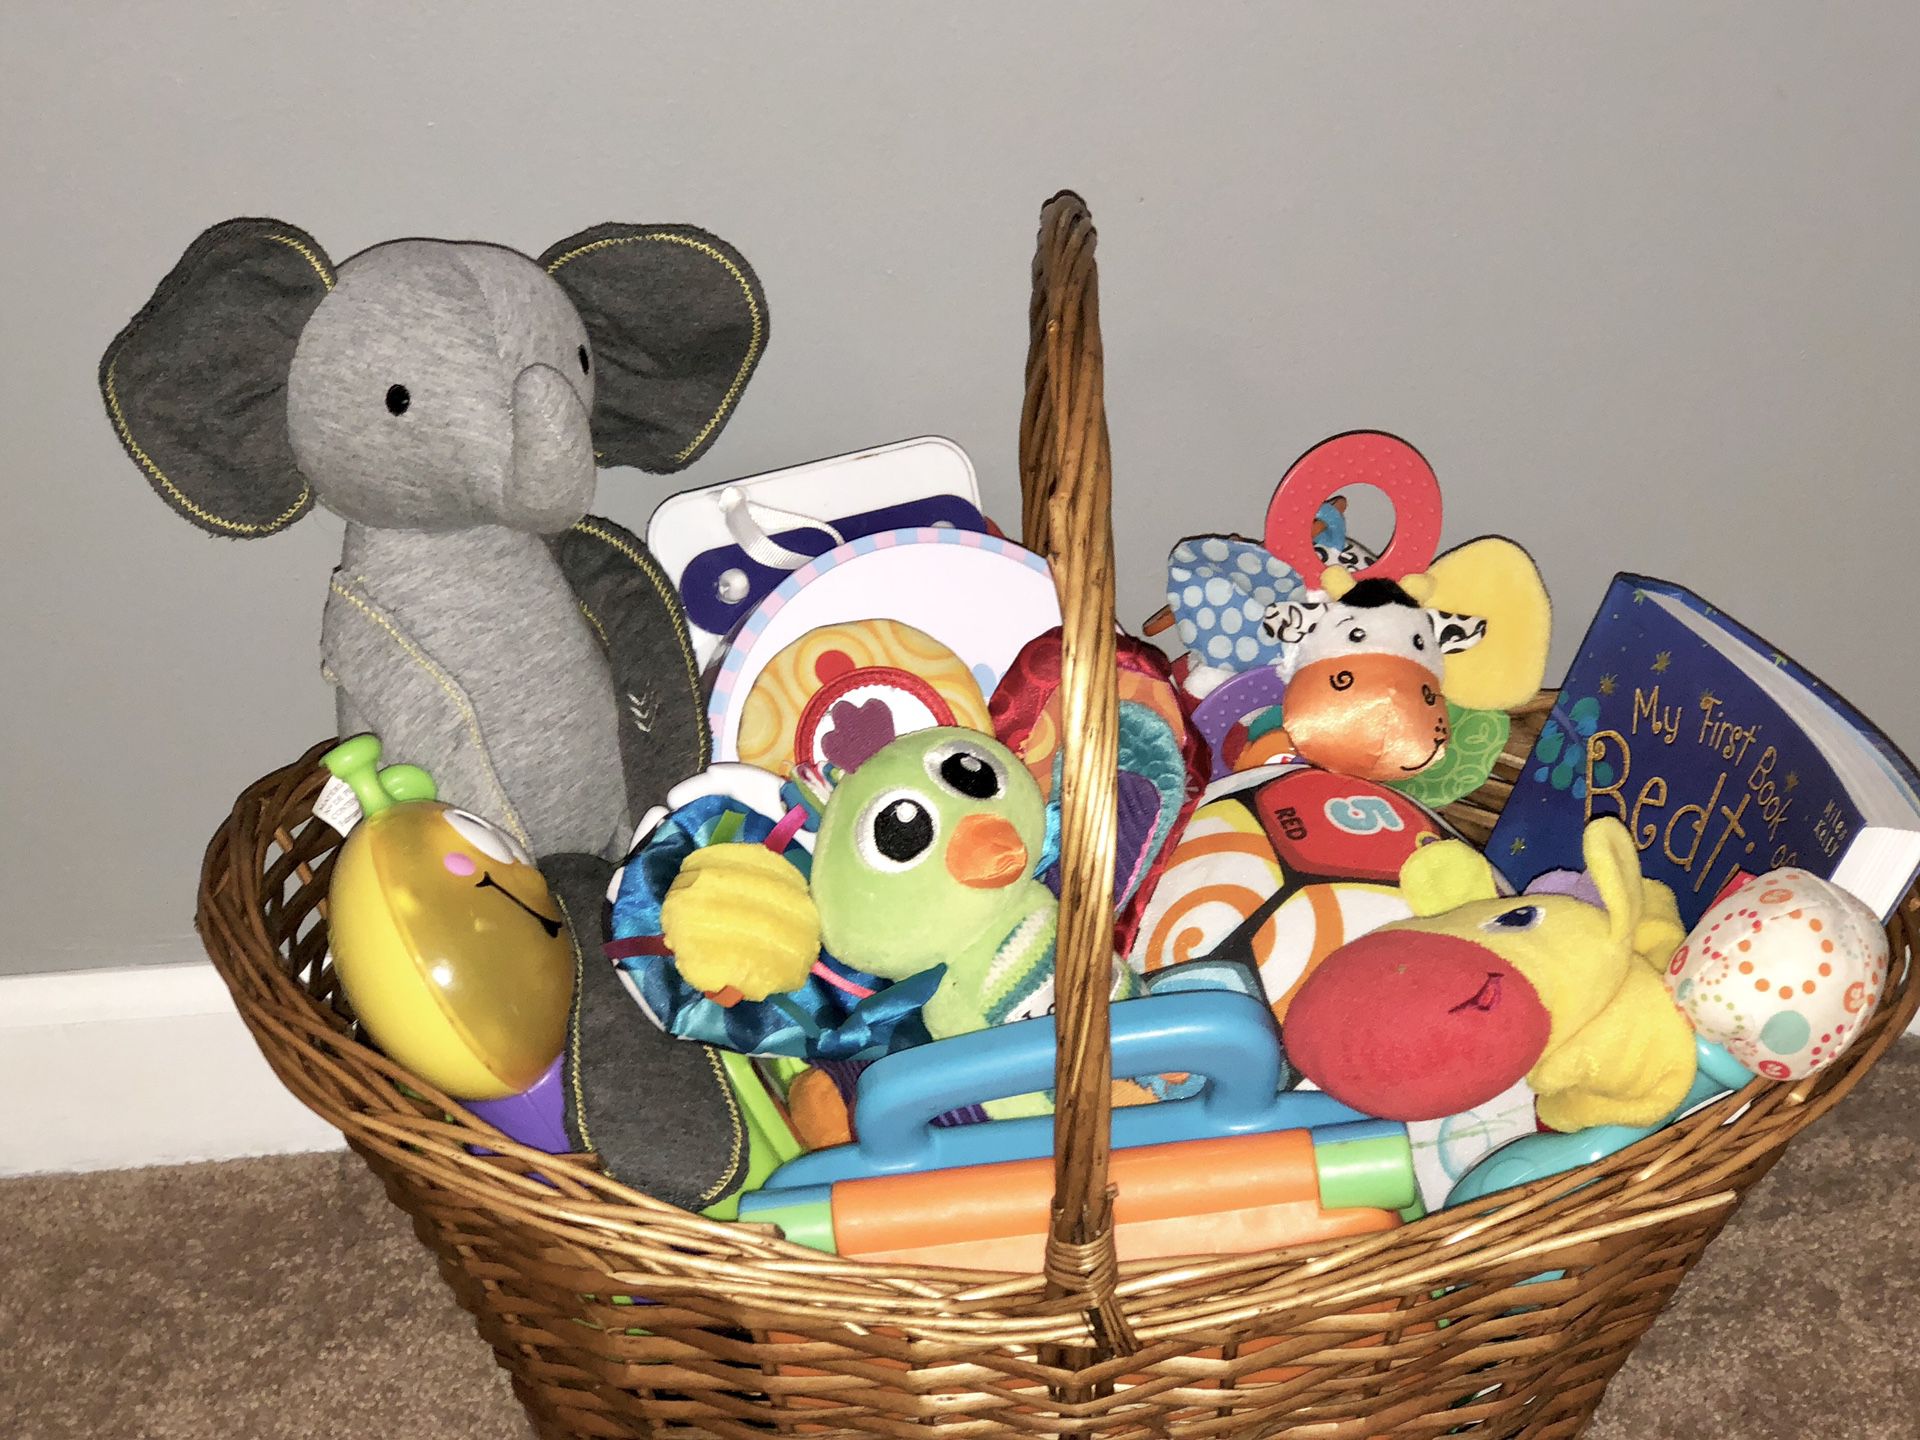 Basket O’ Toys ❤️❤️❤️ so cute!